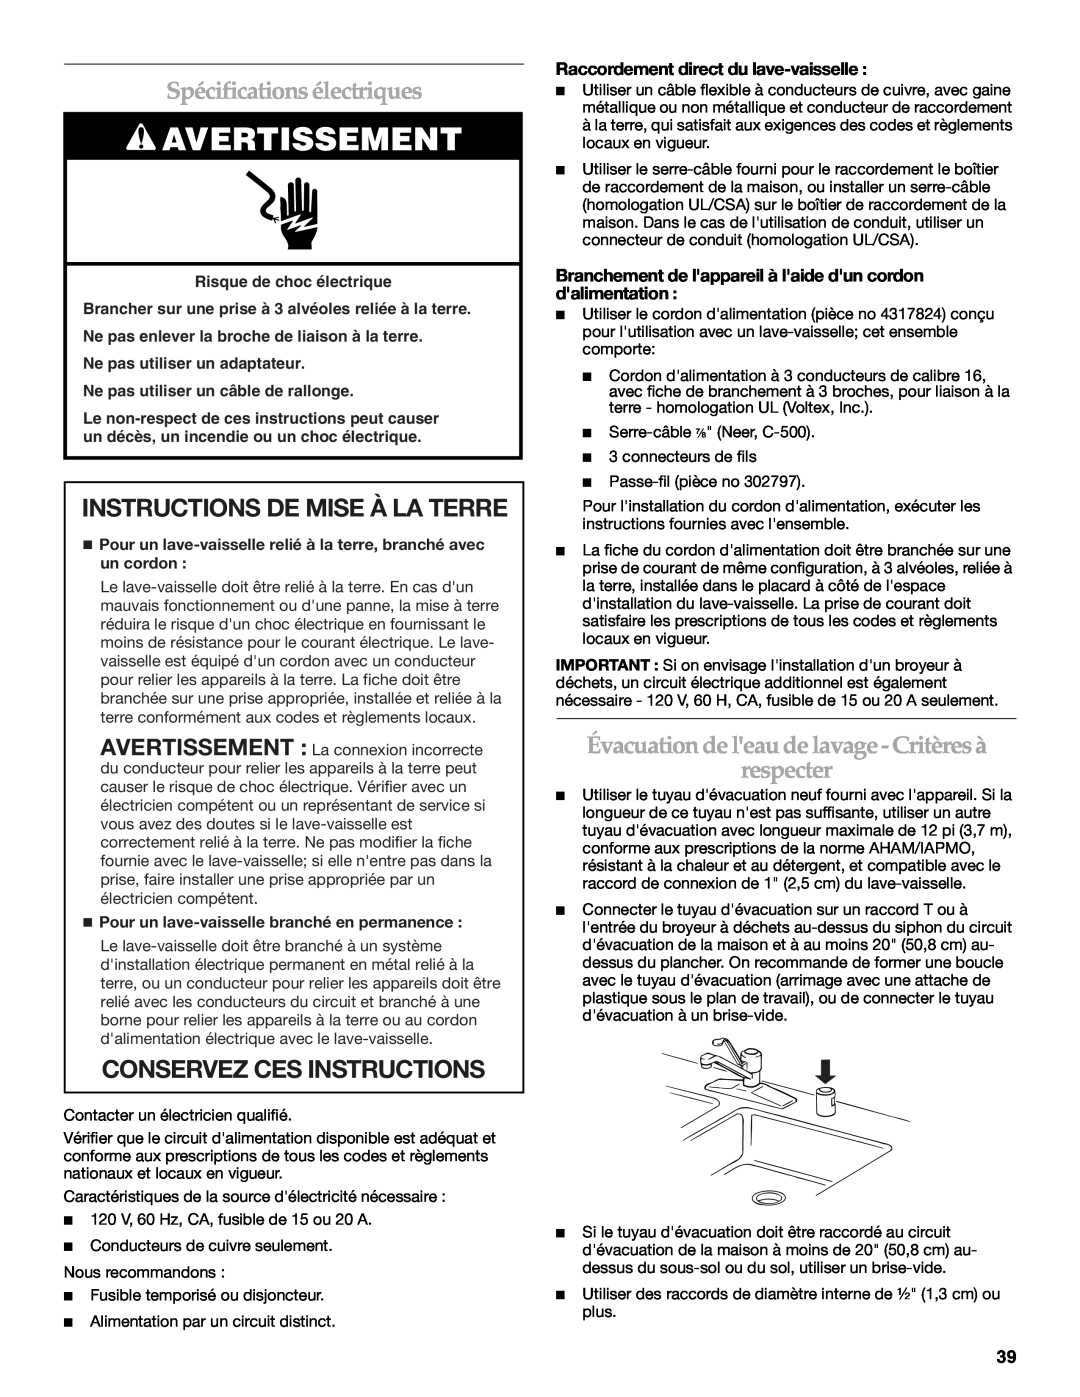 KitchenAid W10118037B Spécifications électriques, Instructions De Mise À La Terre, Conservez Ces Instructions 